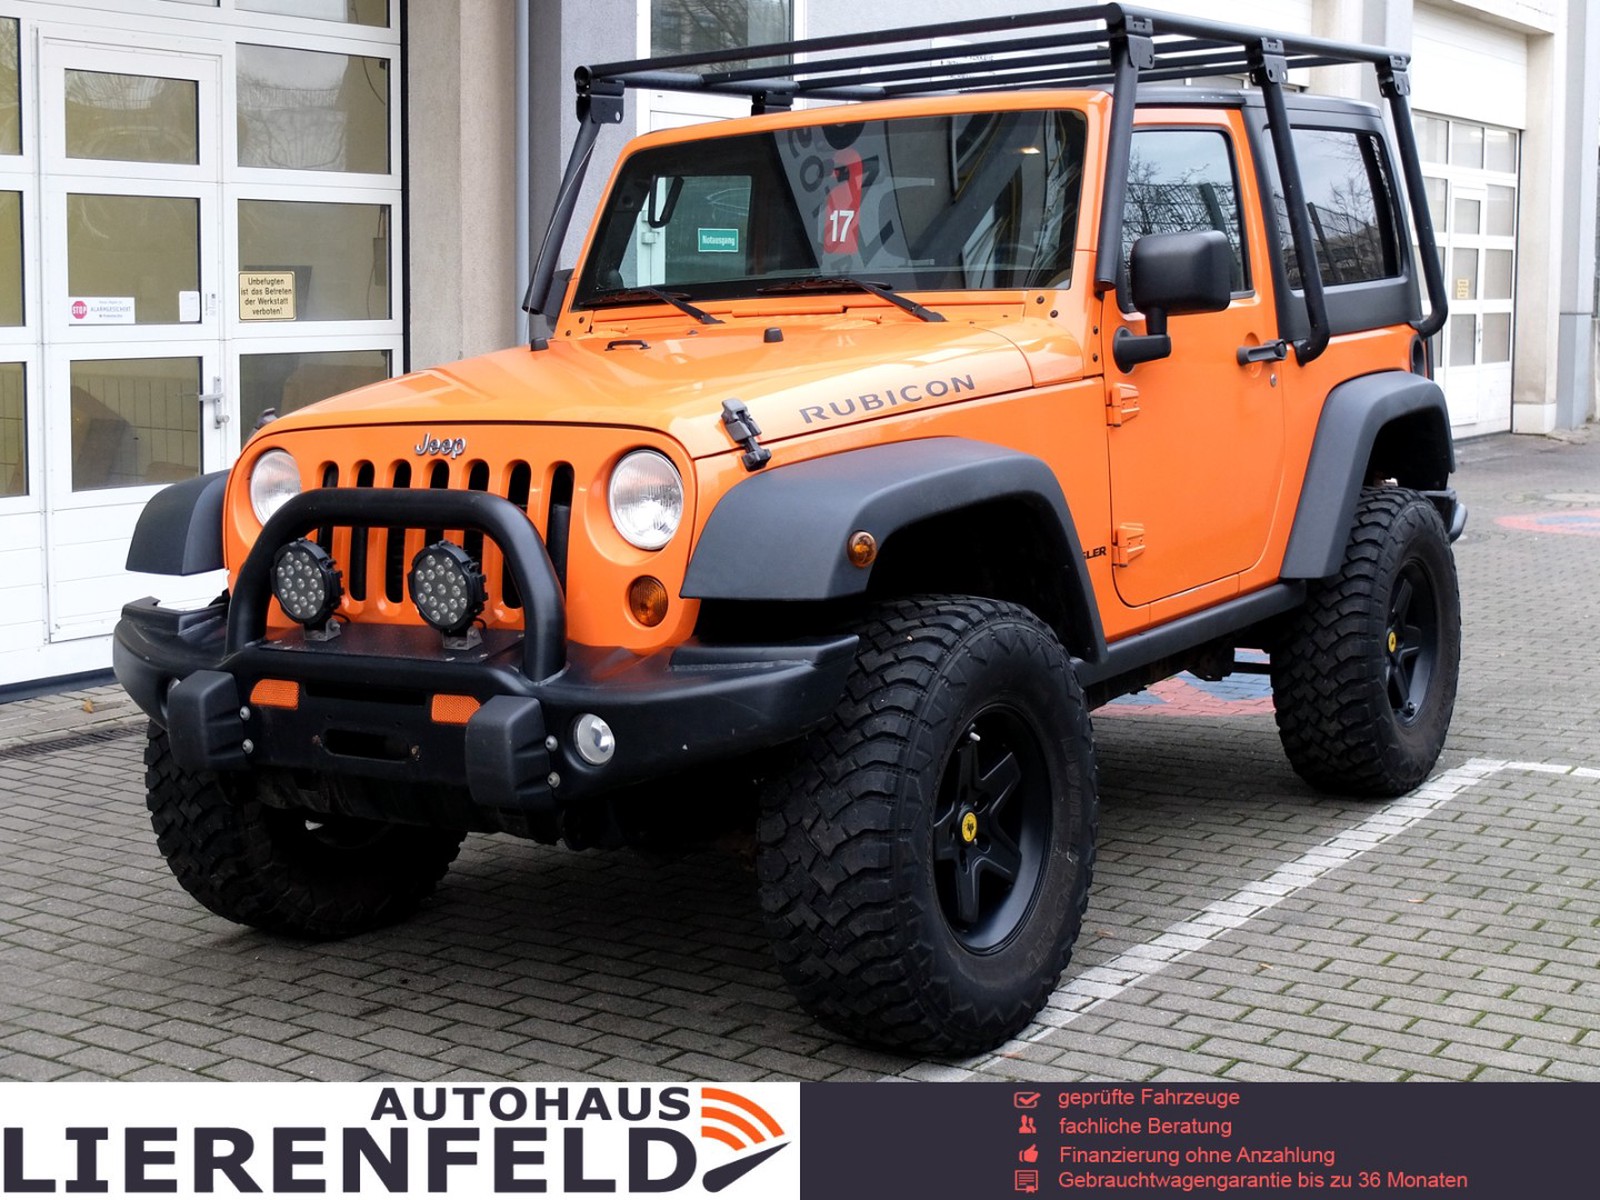 Jeep Wrangler / Unlimited gebraucht kaufen in Düsseldorf Preis 27990 eur -  .: 2076 VERKAUFT